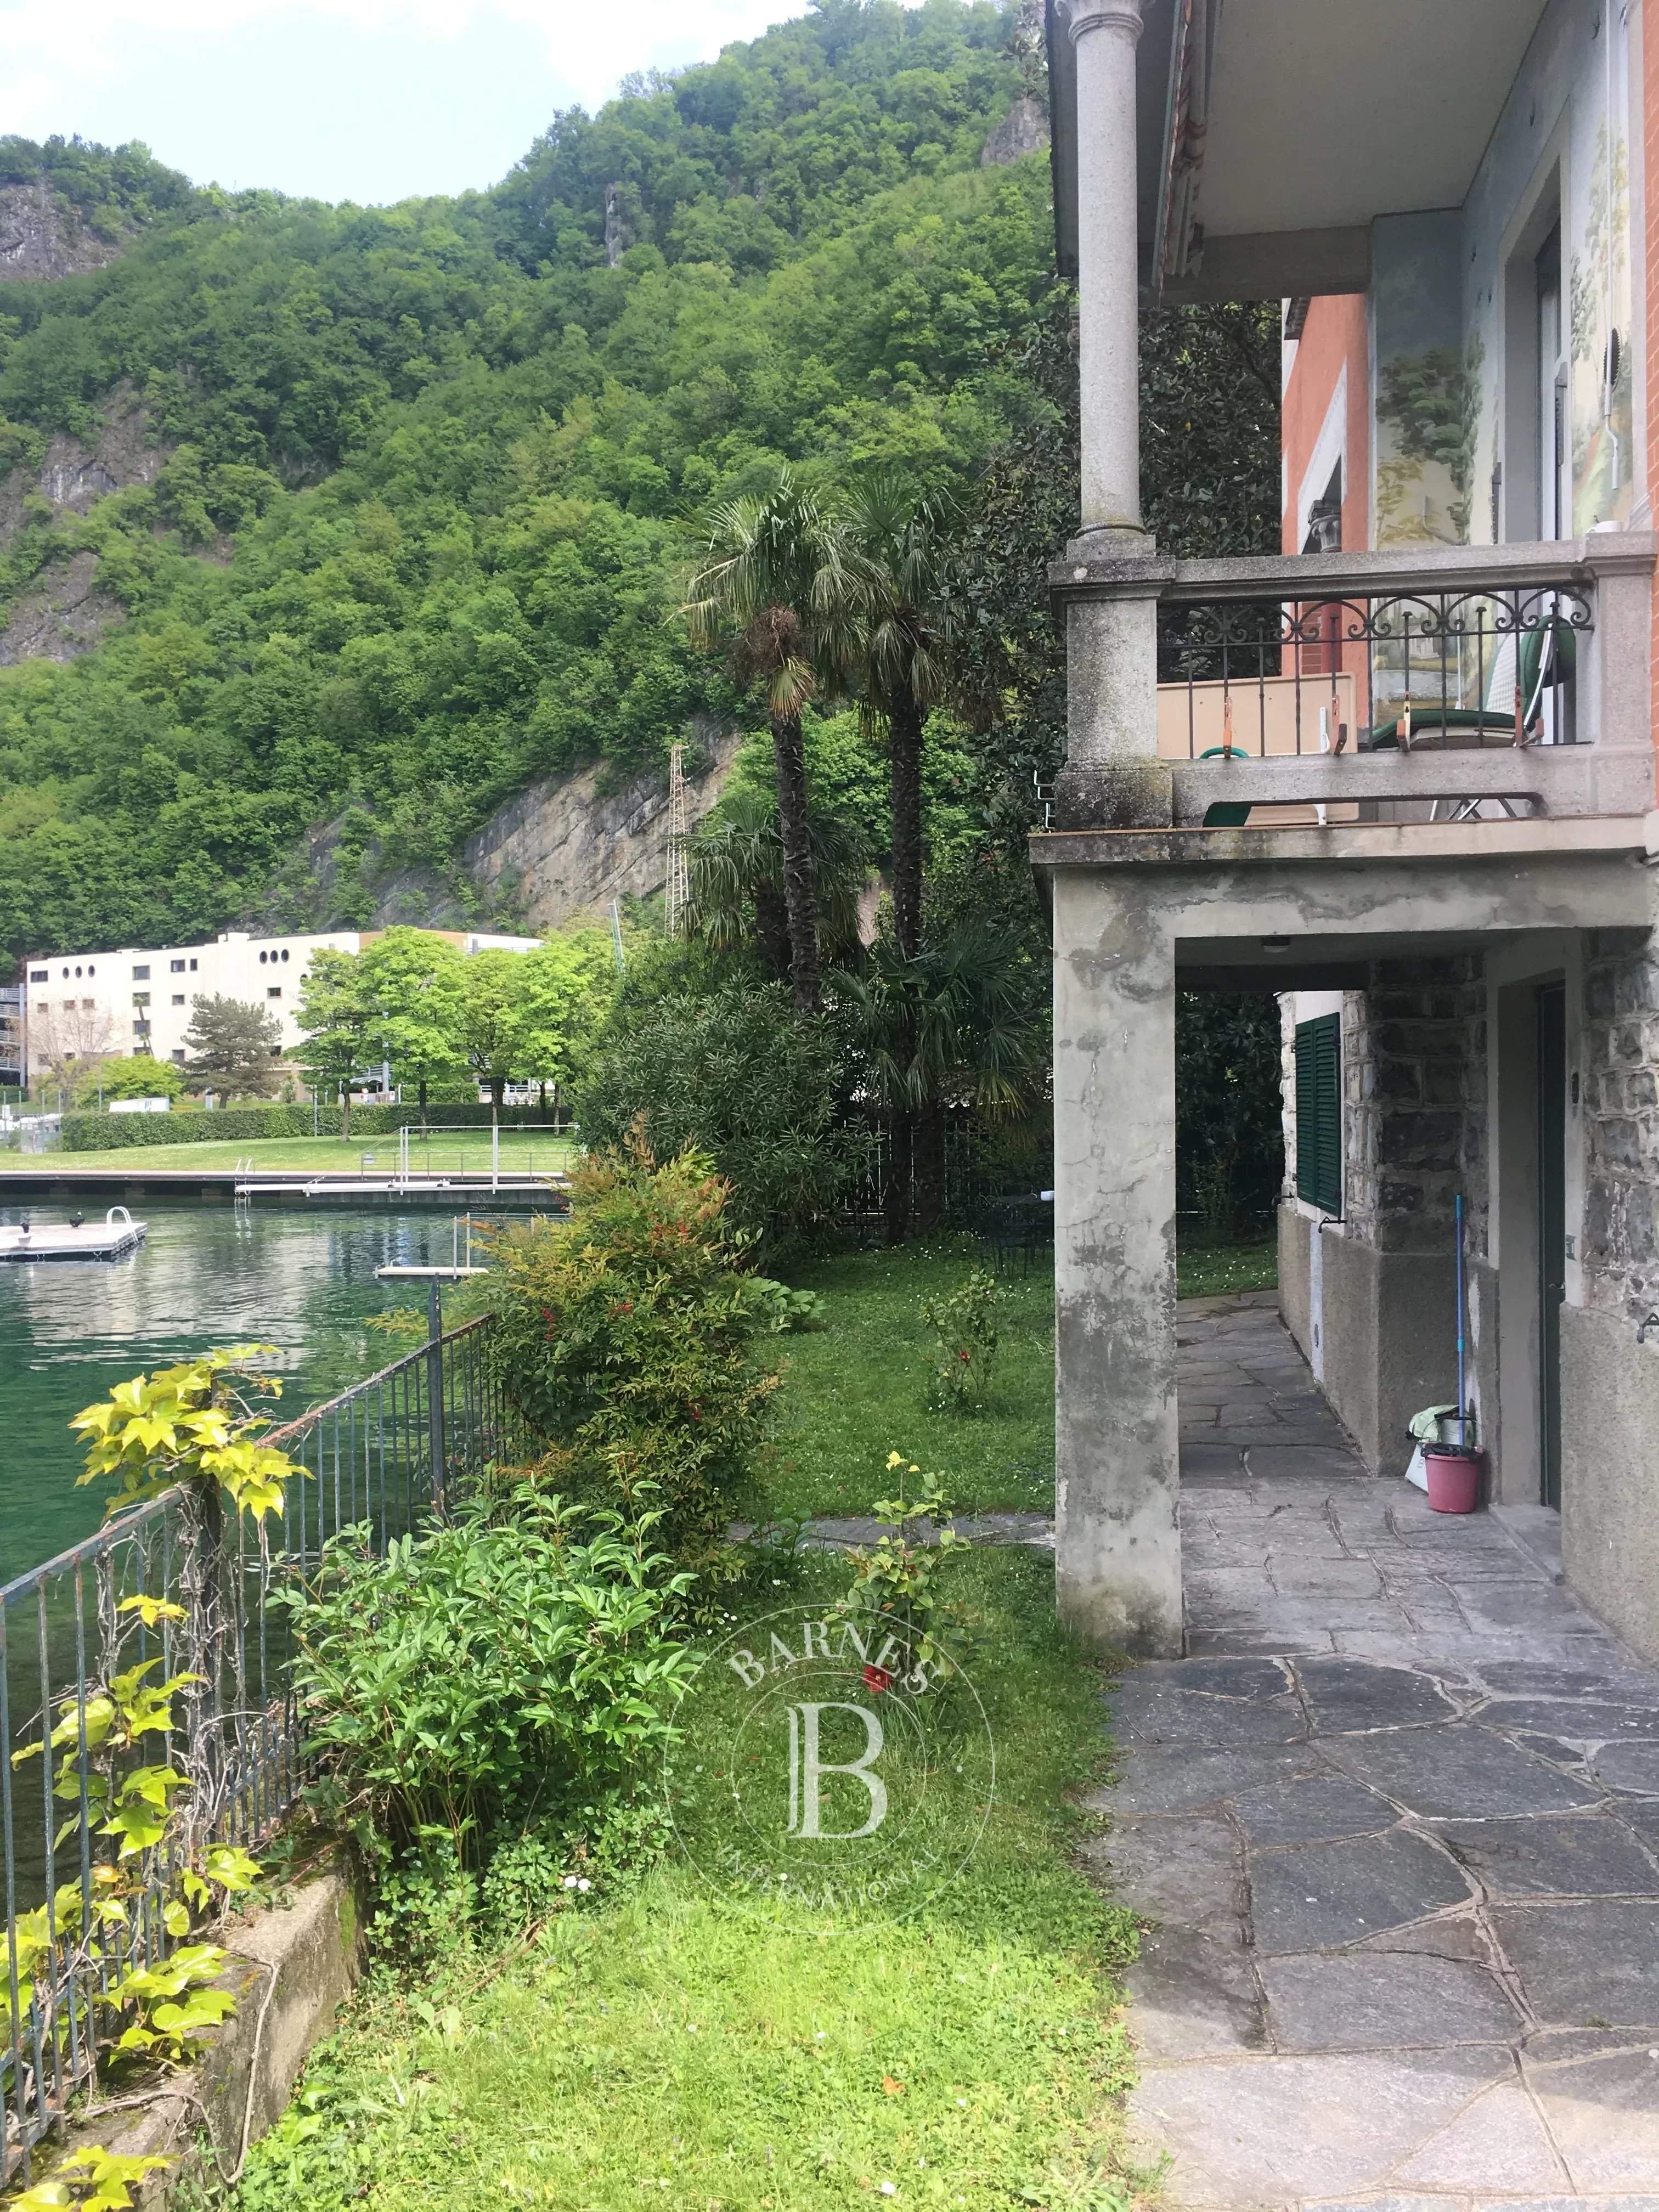 Campione d'Italia  - Apartment  - picture 4